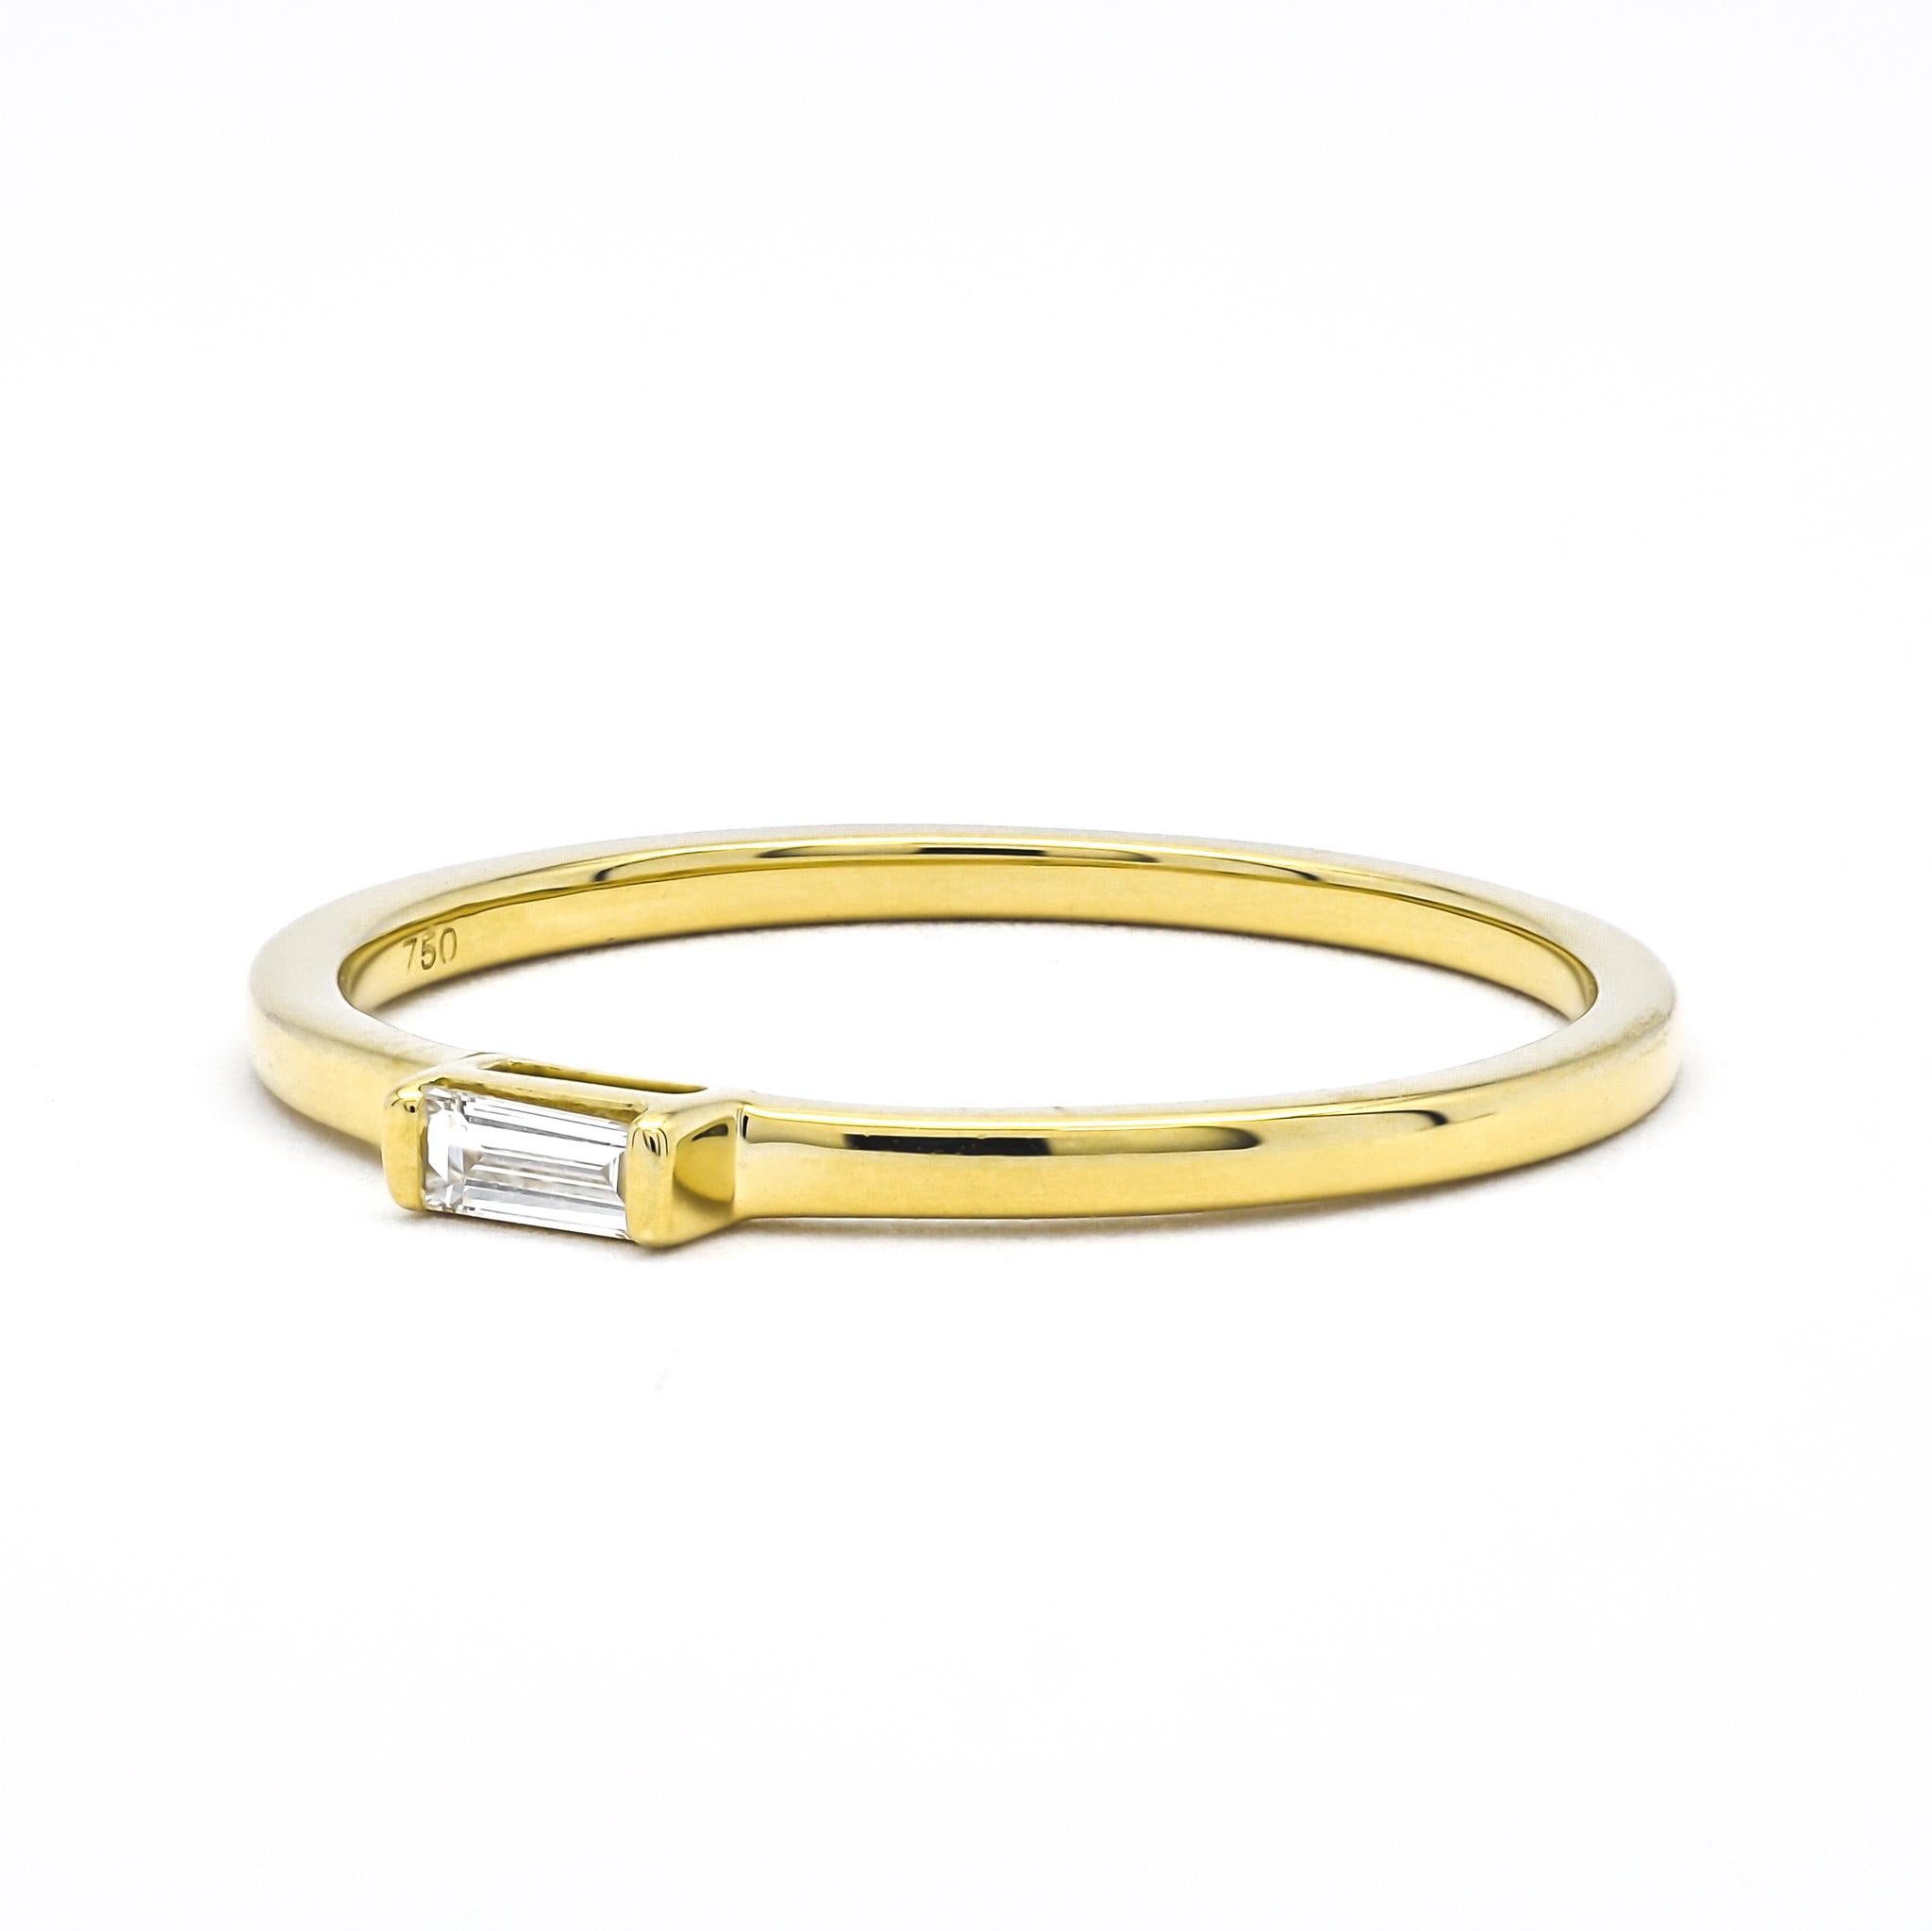 Der Baguette-Ring aus 18-karätigem Gelbgold mit natürlichem Diamant ist ein Meisterwerk der Anmut und Raffinesse. Dieser mit Präzision aus 18-karätigem Gelbgold gefertigte Ring enthält einen natürlichen Diamanten im Baguetteschliff von 0,06 Karat in